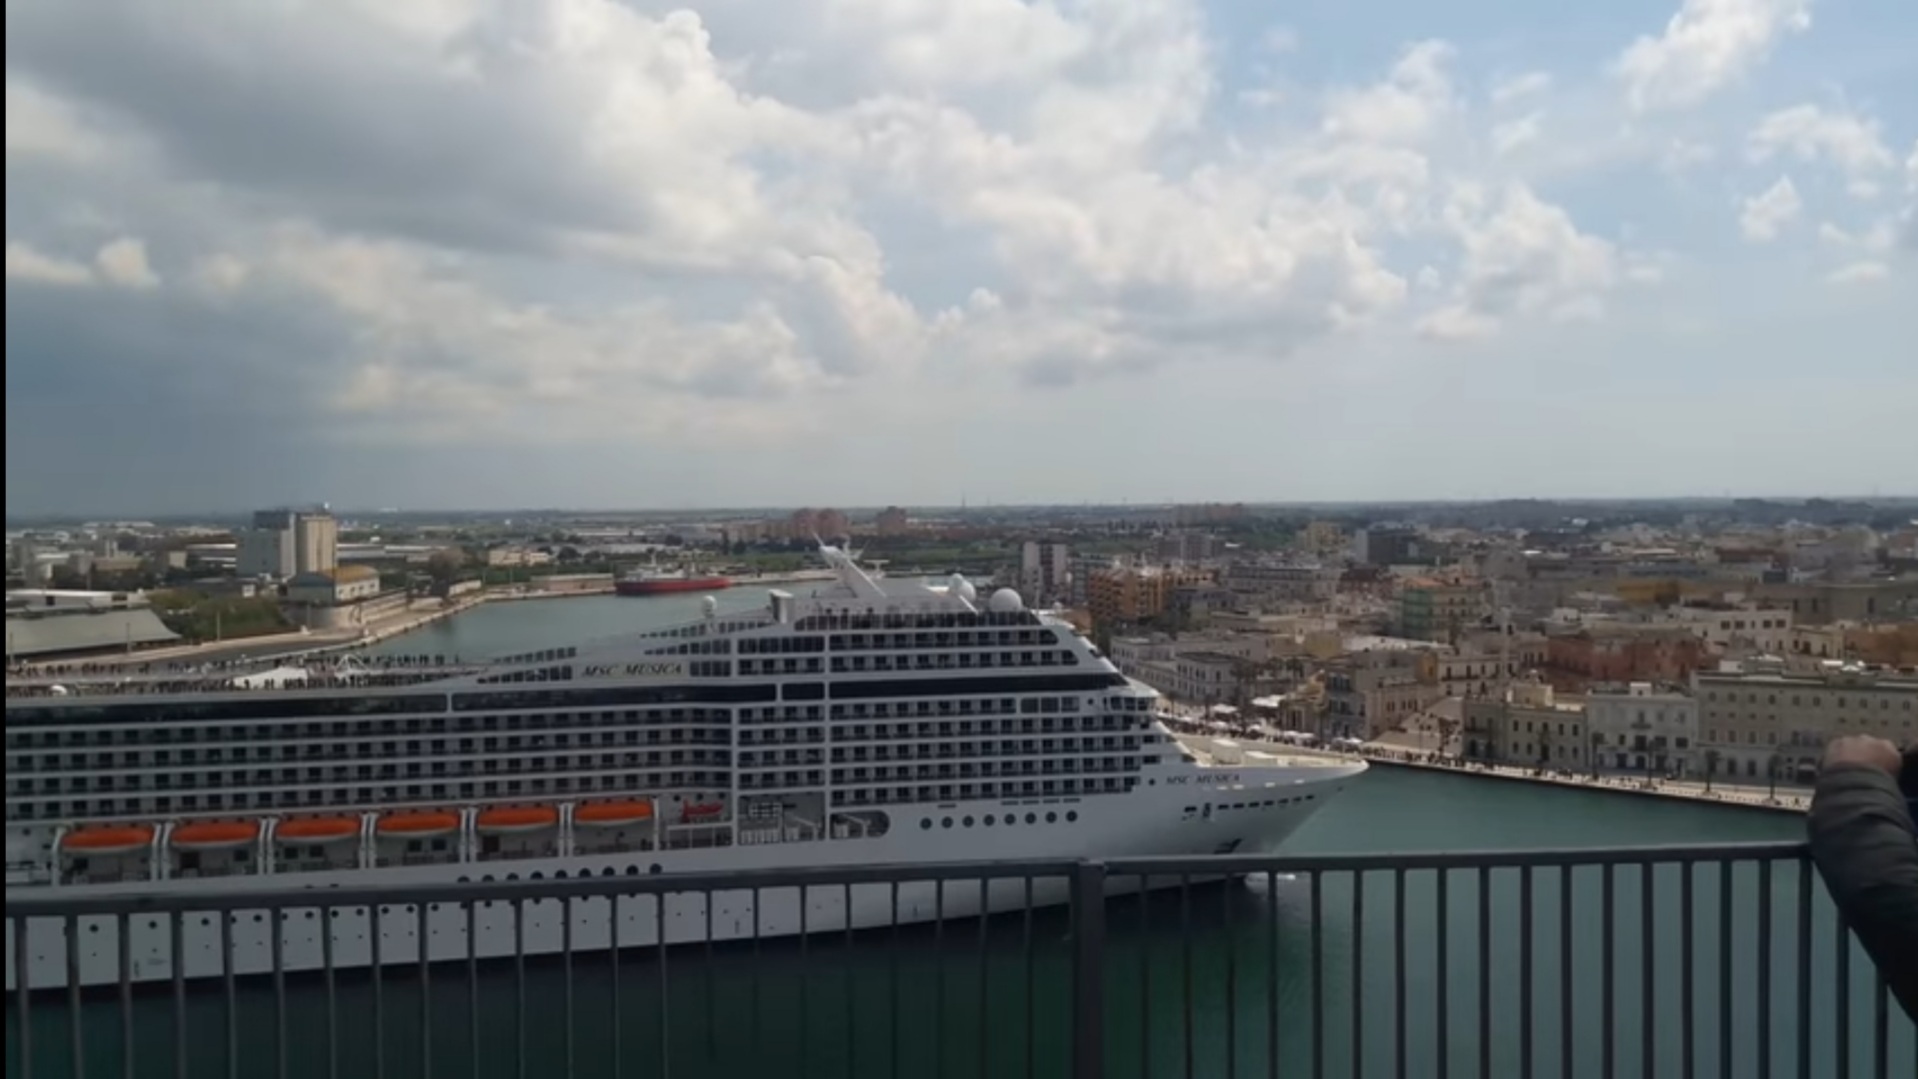 MSC abbandona Brindisi: da maggio 4 navi scaleranno Bari e la new entry Taranto! Ecco i danni della burocrazia…